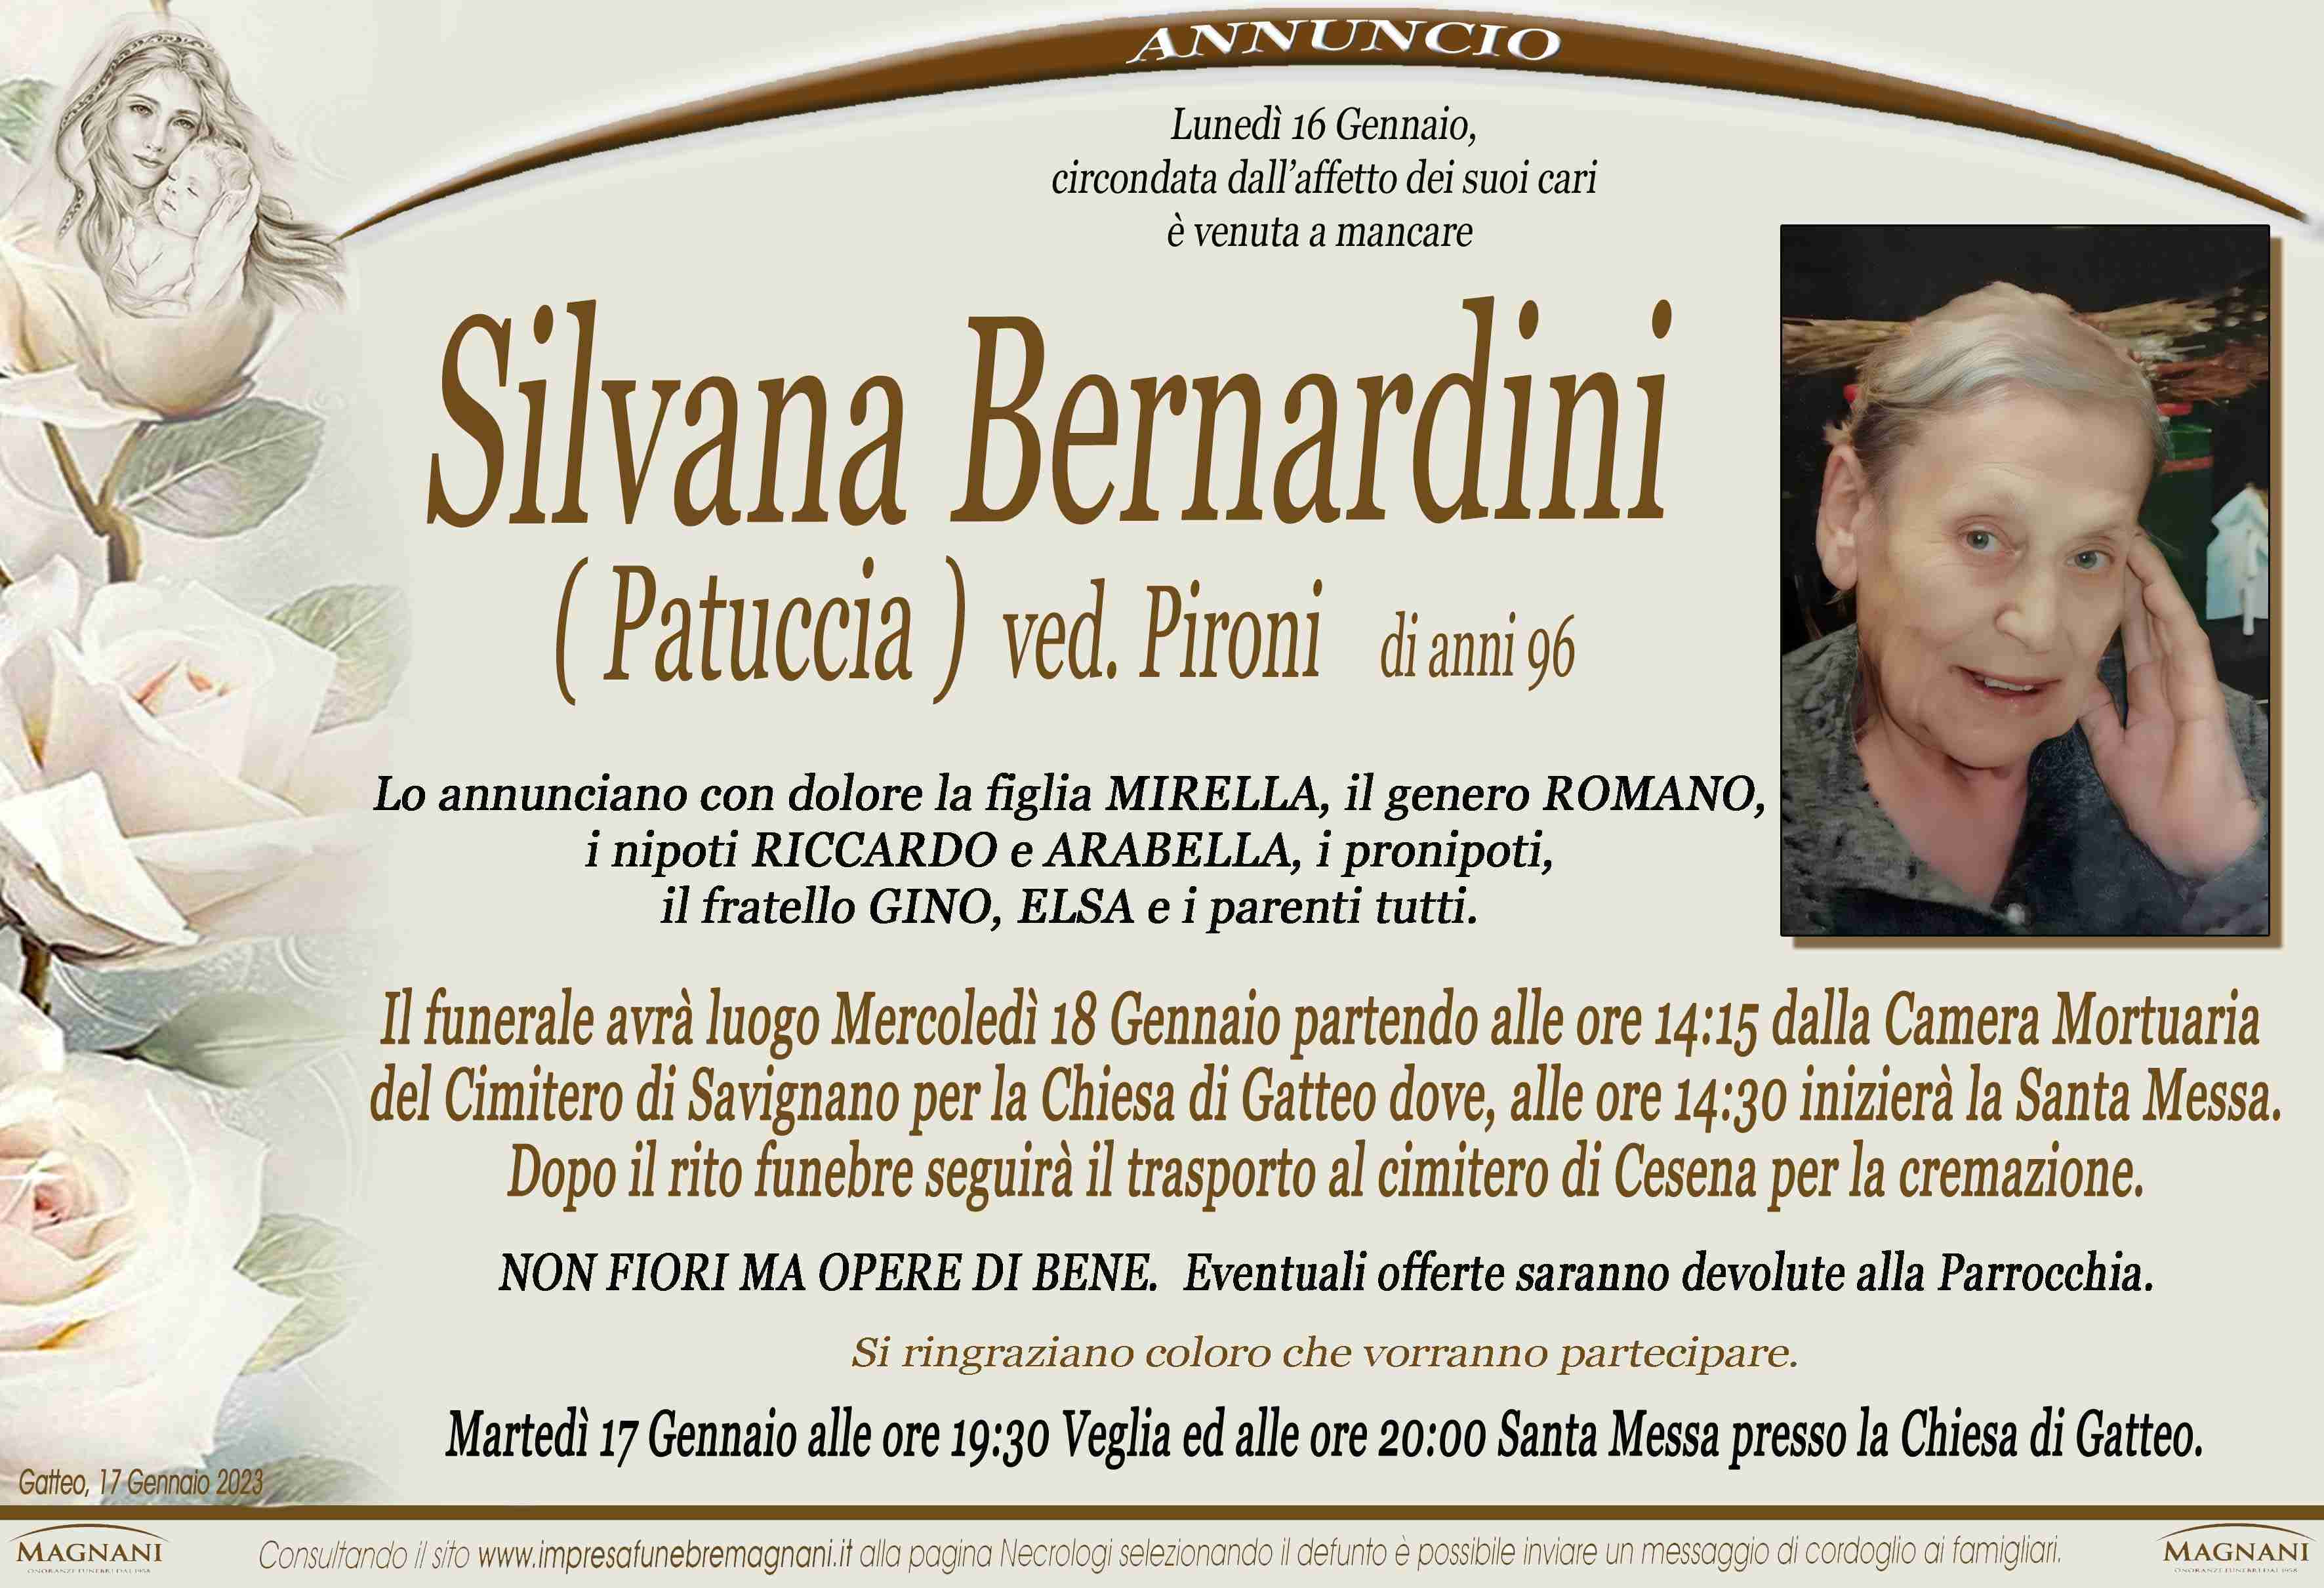 Silvana Bernardini